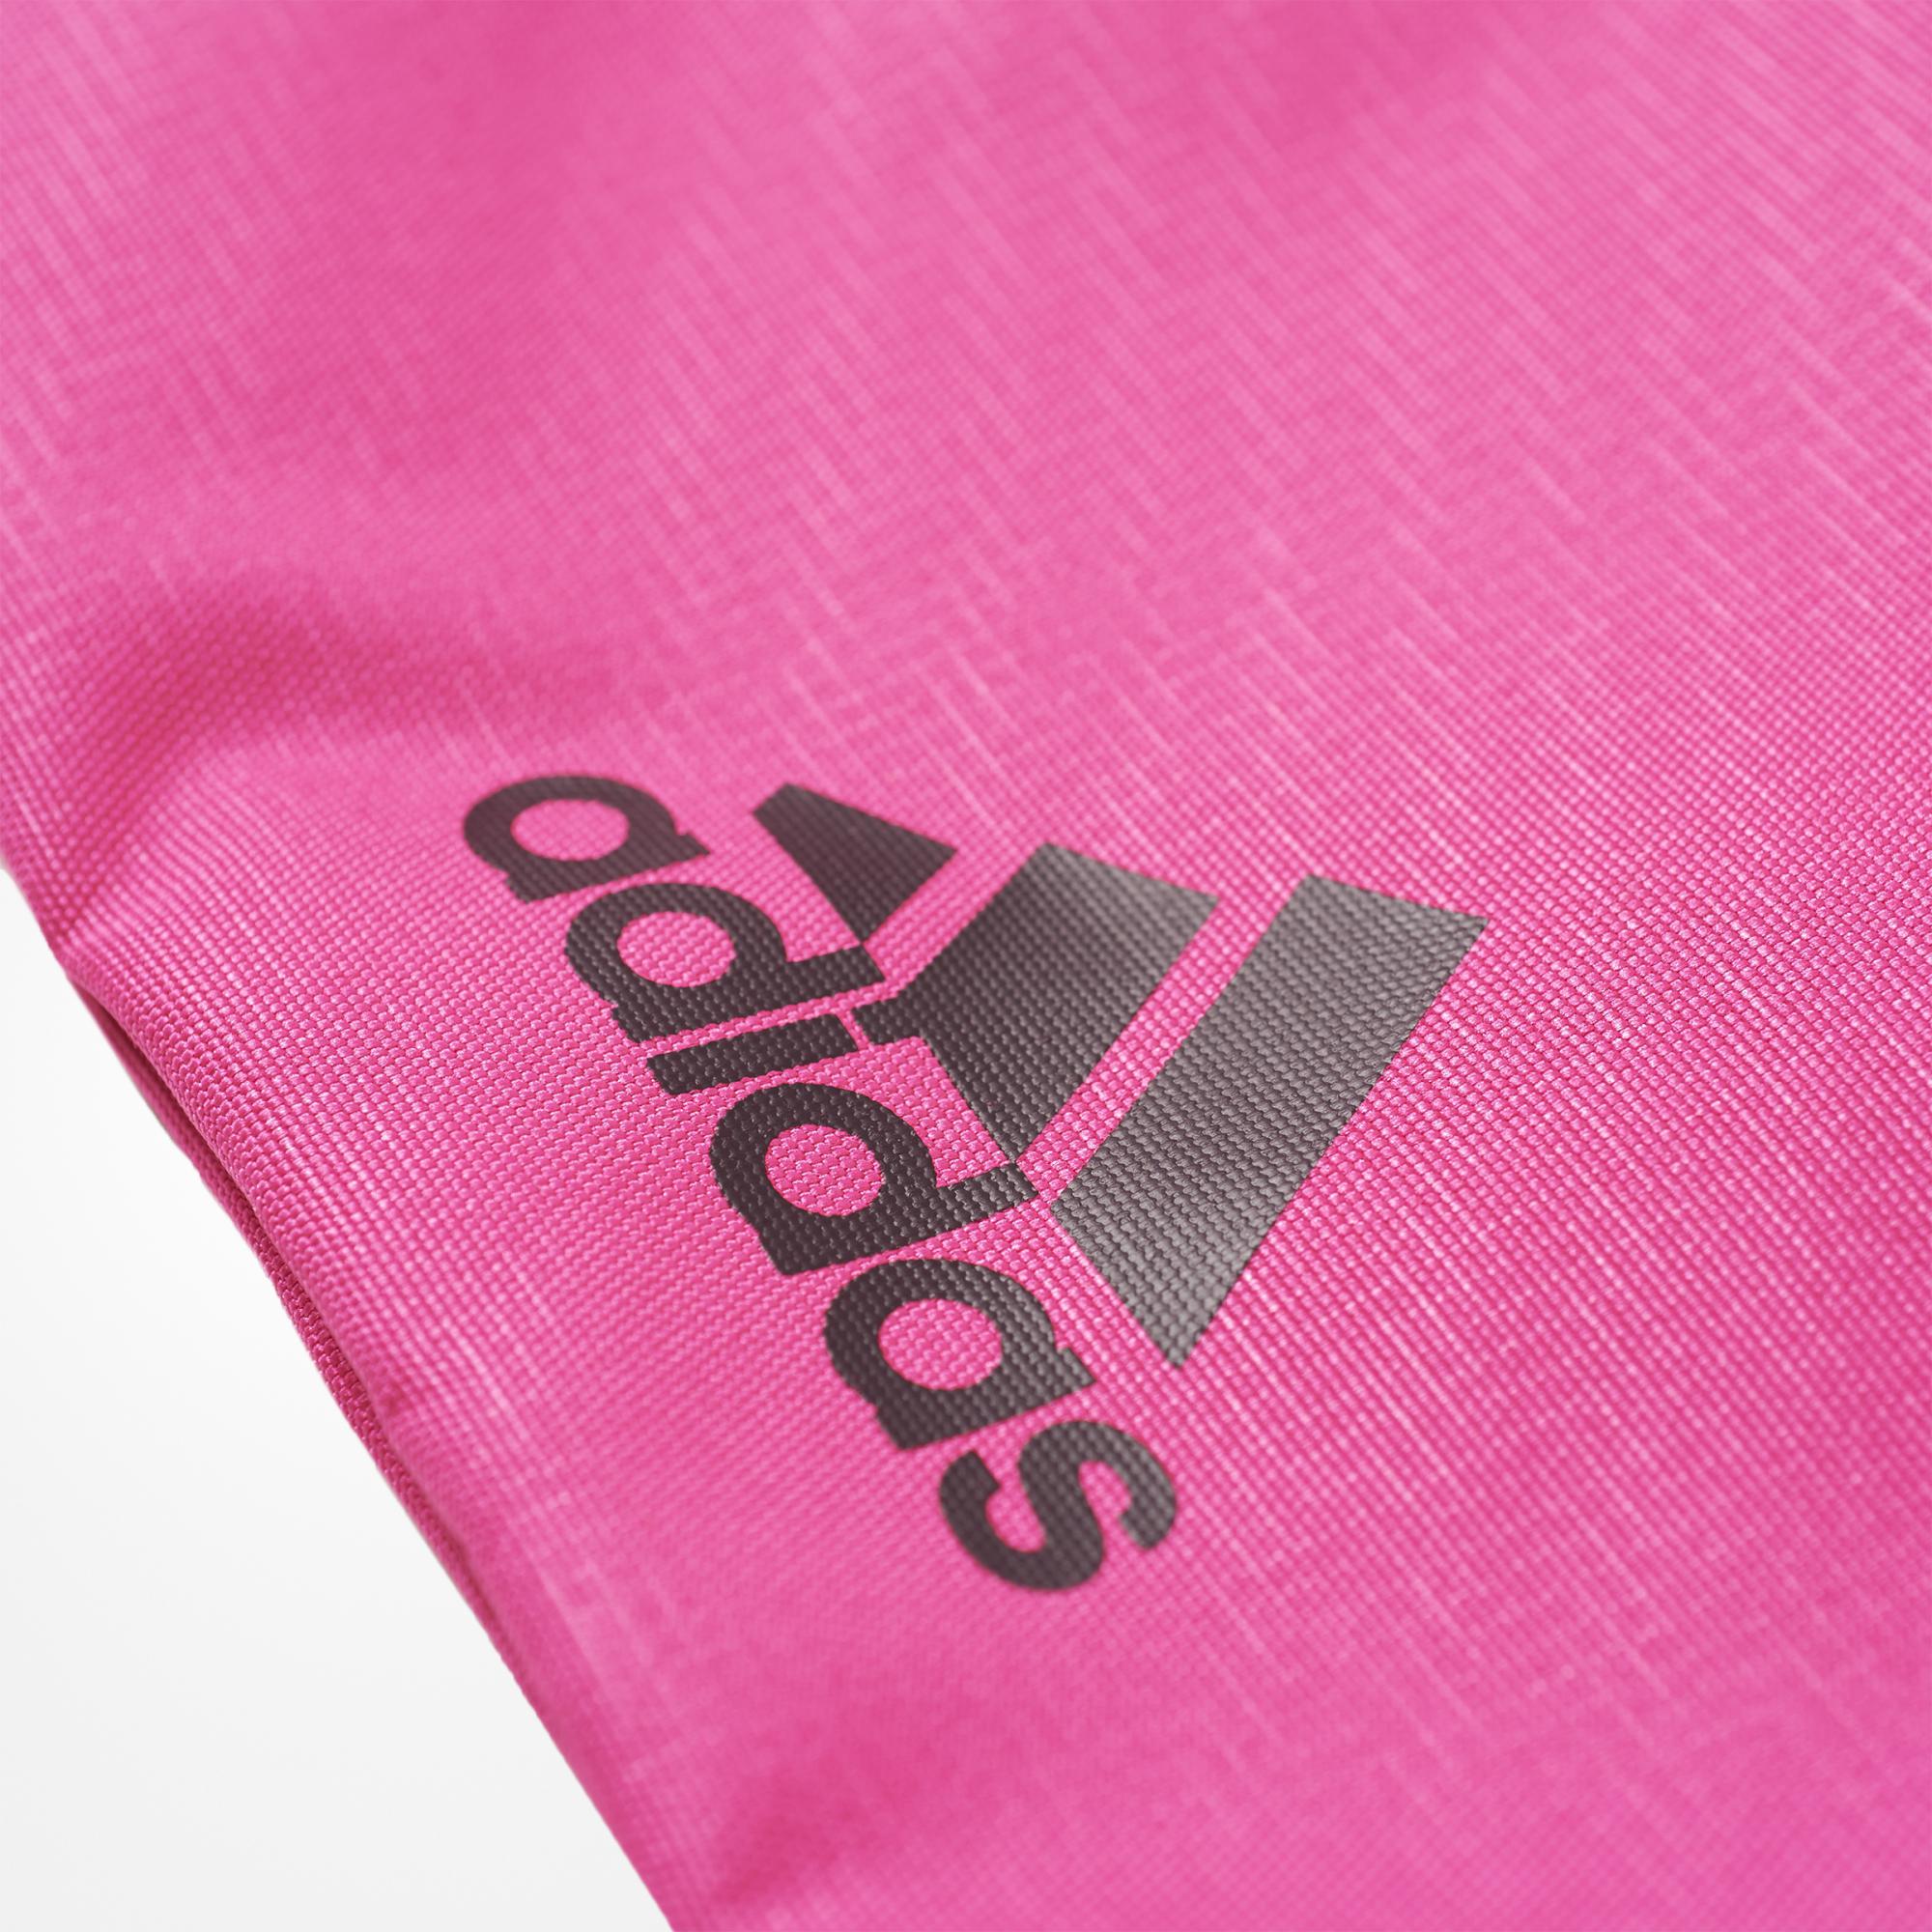 Adidas Bolsa de Cincha (rosa/negro)